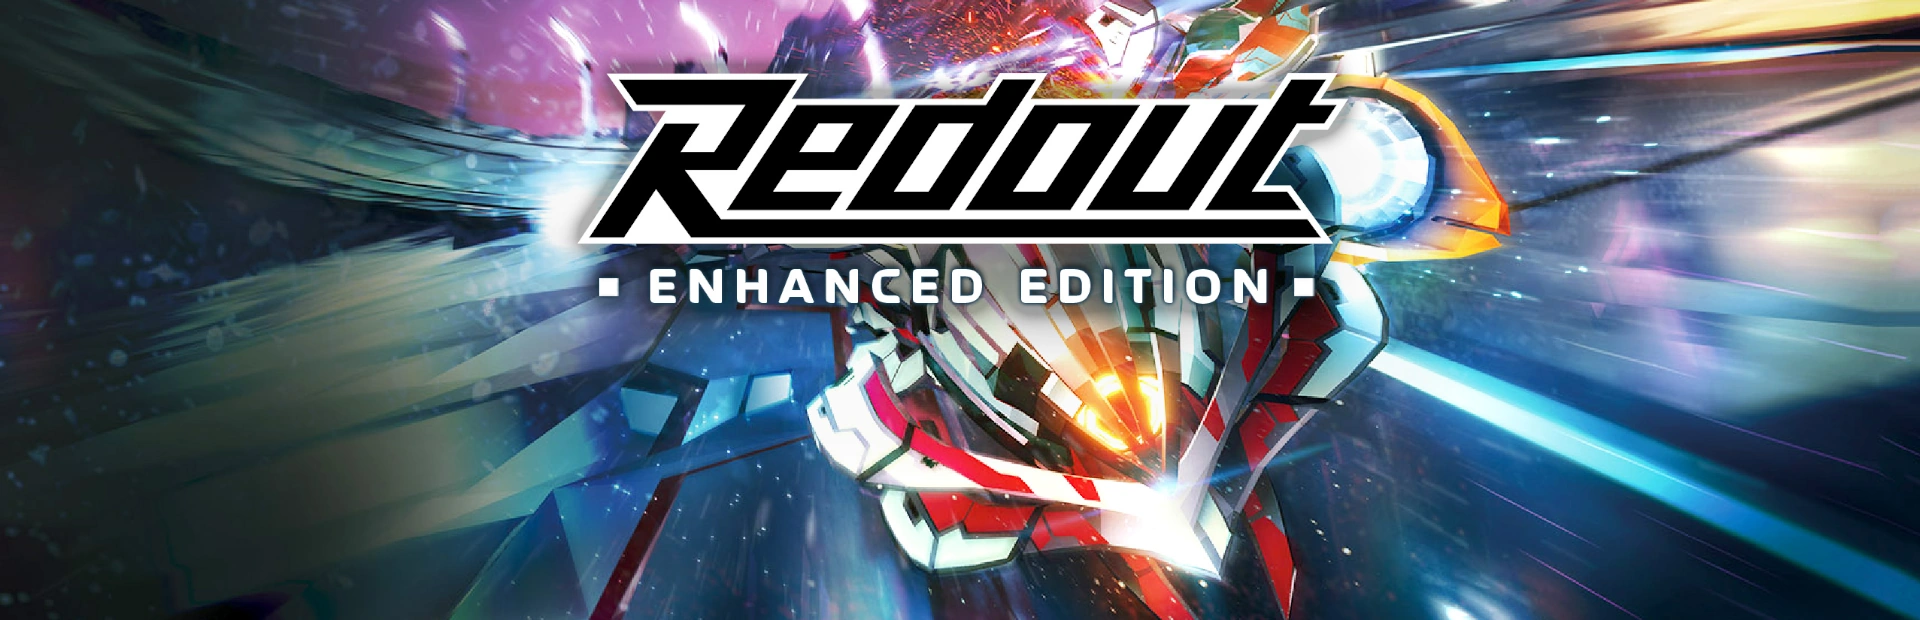 دانلود بازی Redout: Enhanced Edition برای کامپیوتر | گیمباتو